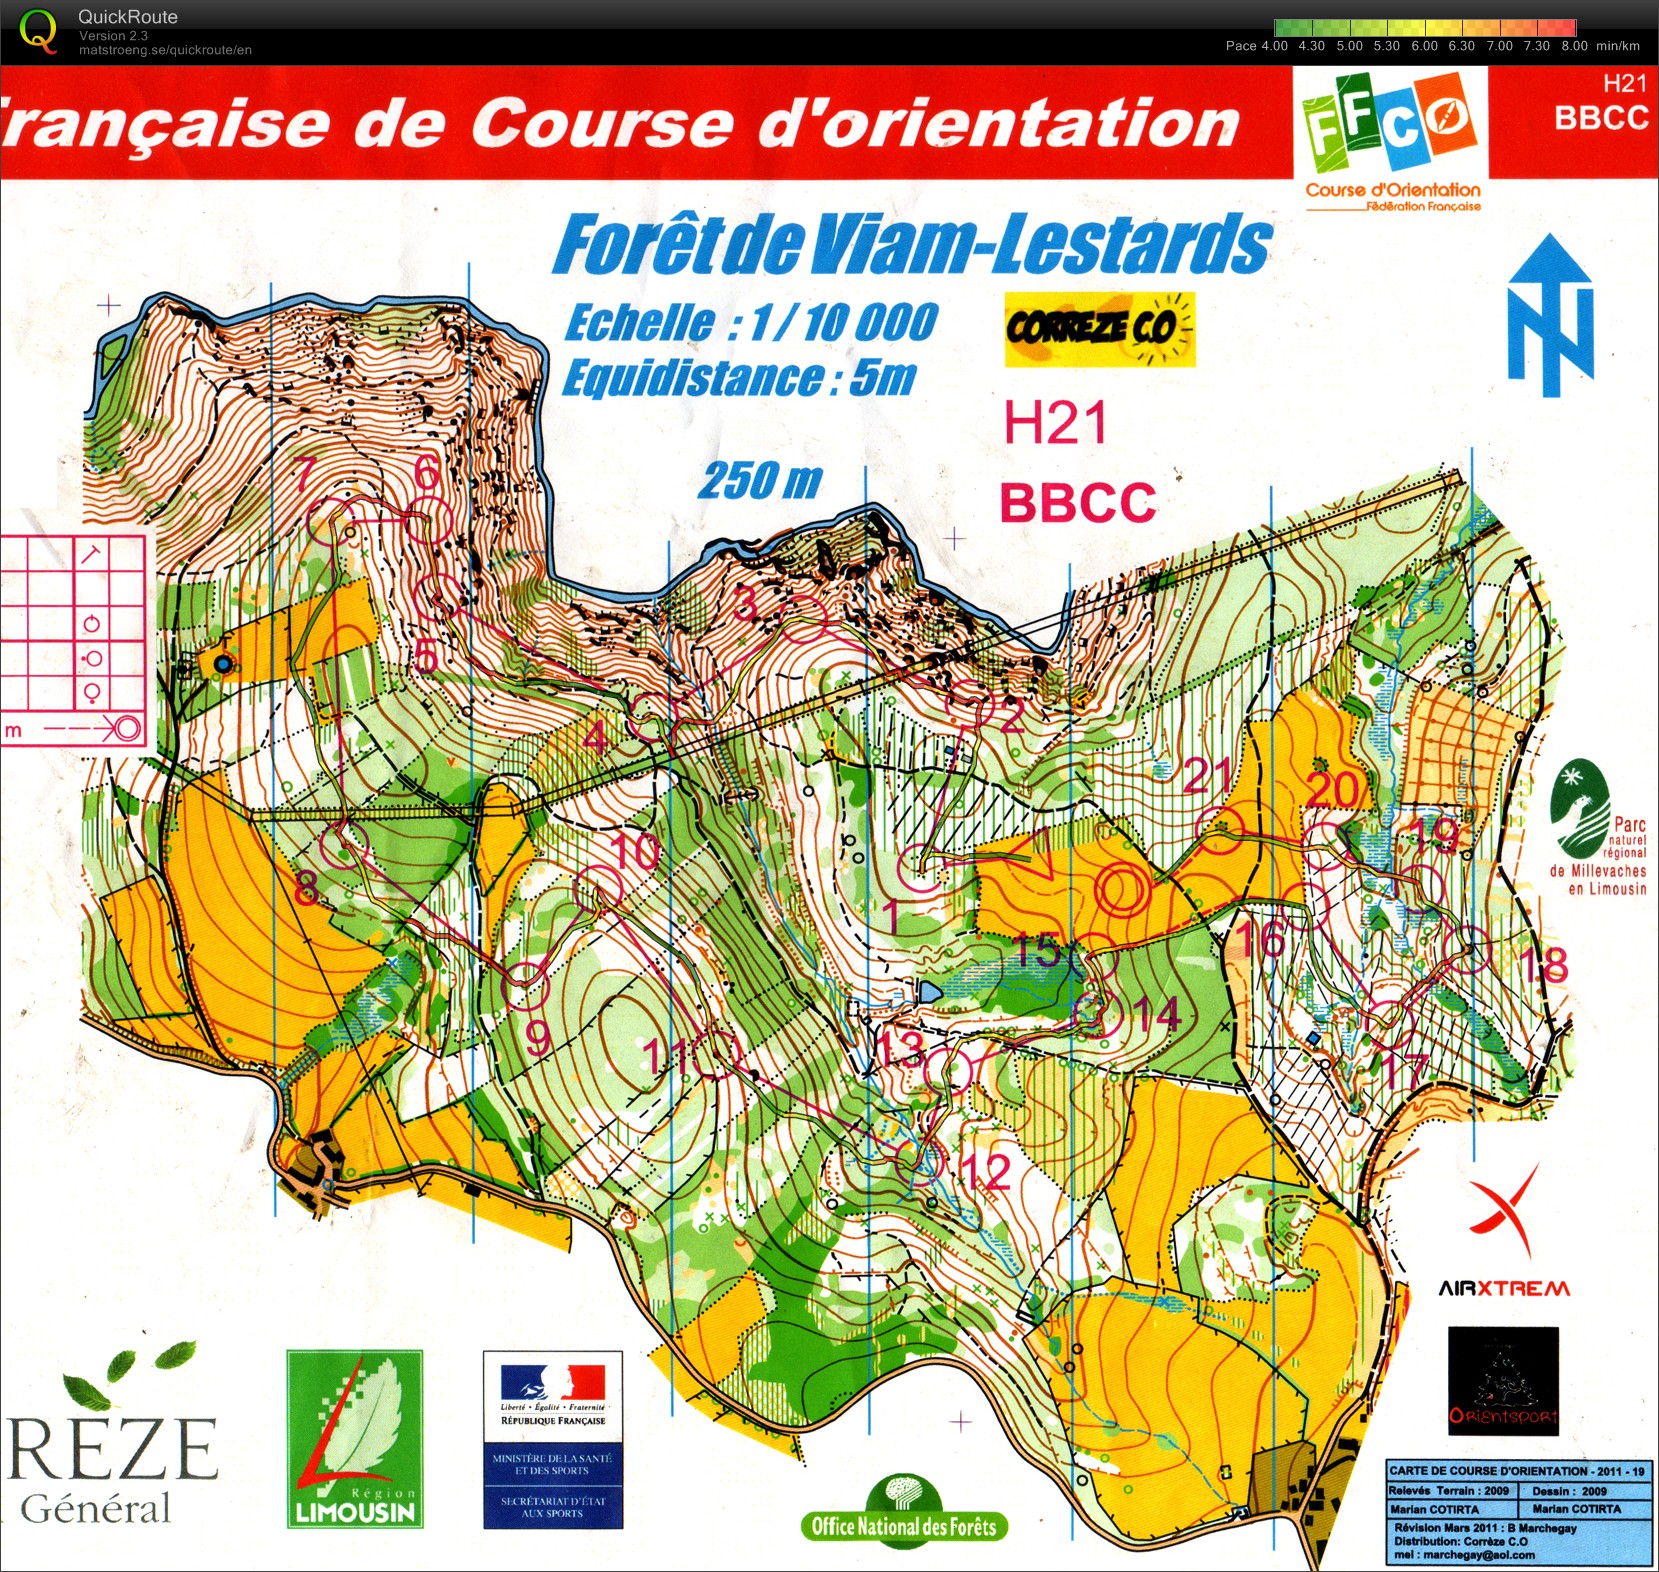 Championnats de France 2011 - Relais (2011-07-17)